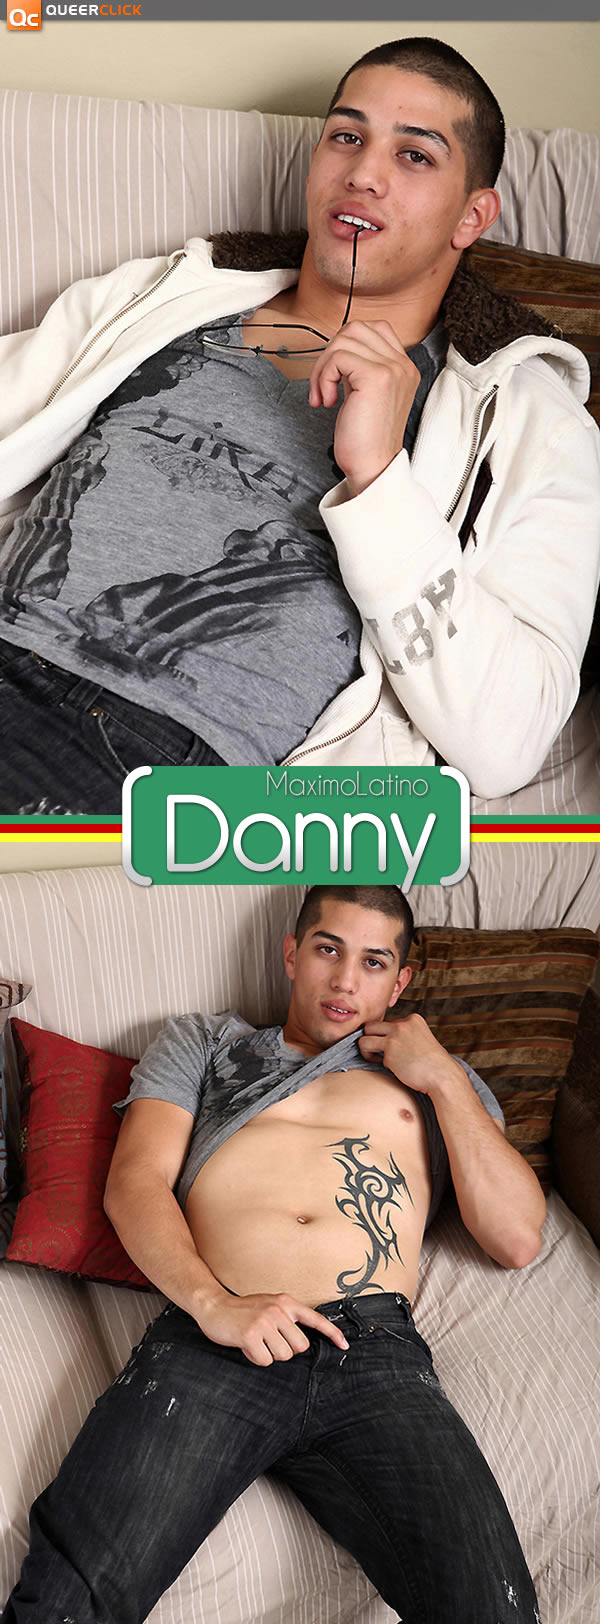 Maximo Latino: Danny